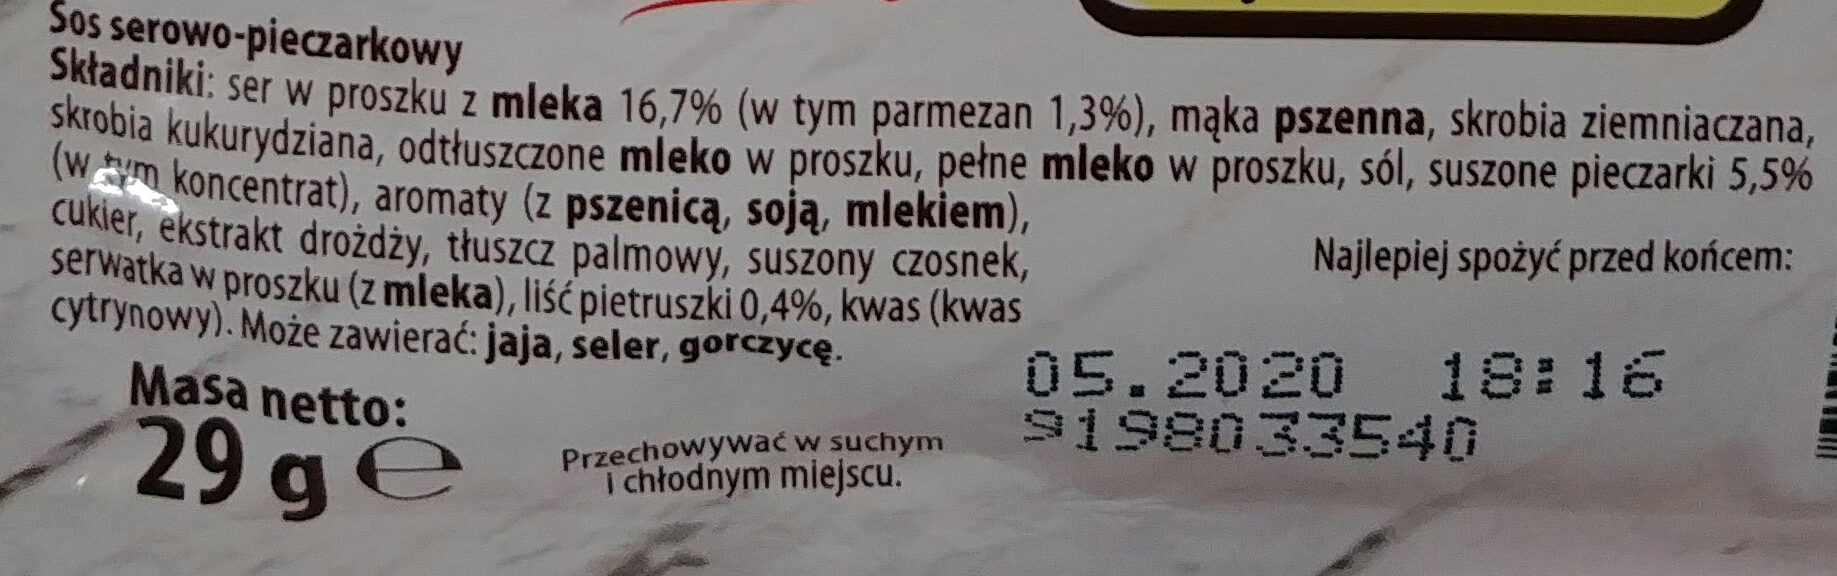 Sos do makaronu serowo-pieczarkowy - Ingredients - pl